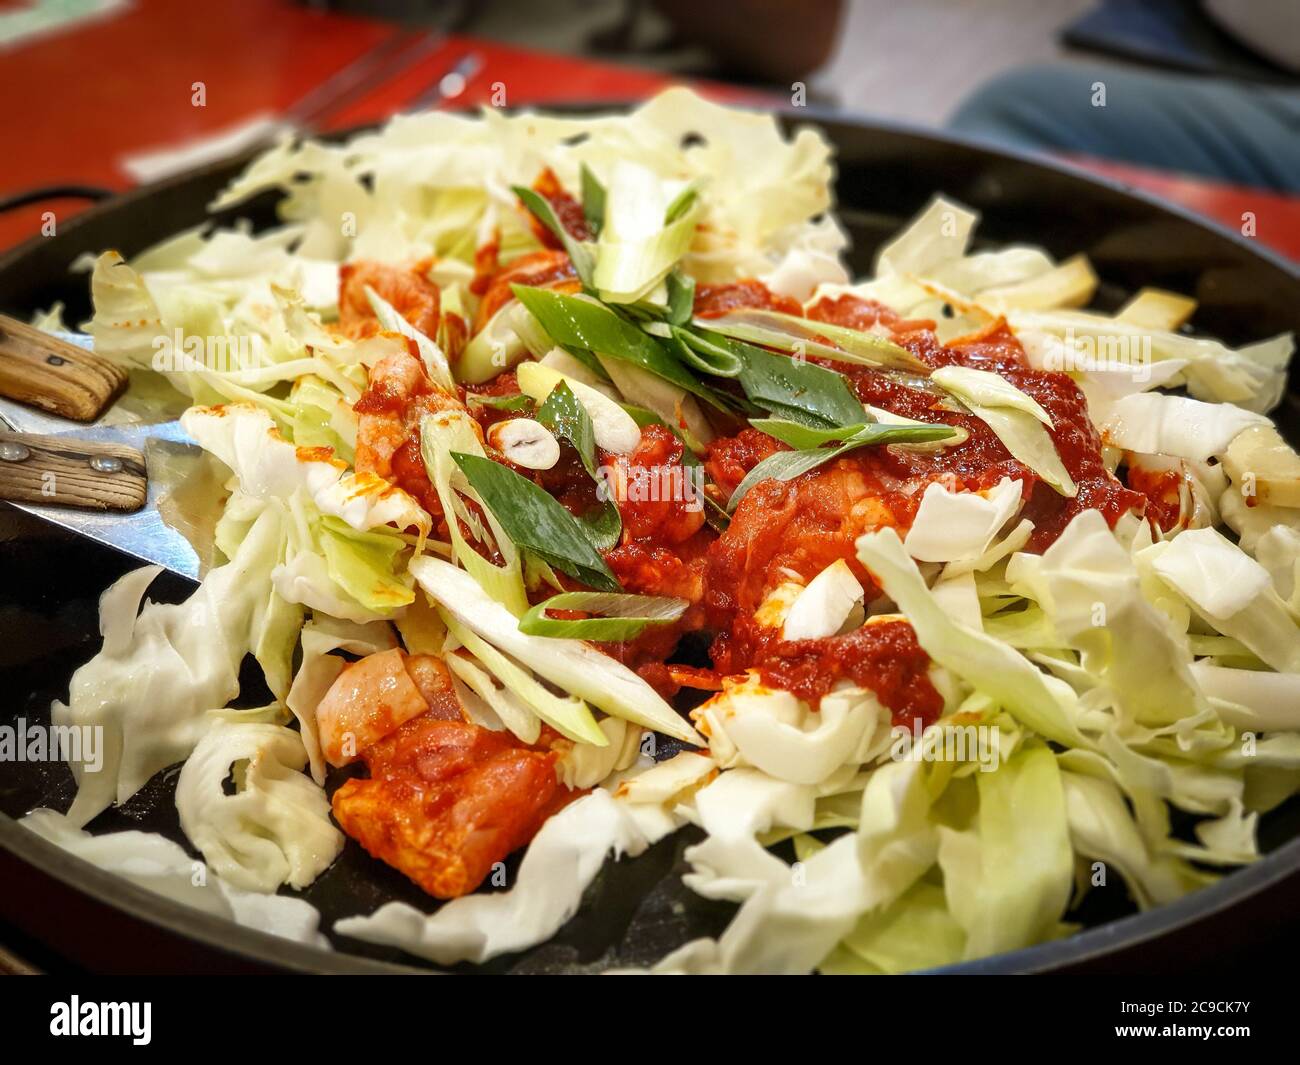 Ingredienti crudi di Dak-galbi, pollo piccante fritto con stir prima di cucinare sulla griglia - Gangneung, Corea del Sud. Popolare cibo coreano tra i giapponesi. Foto Stock